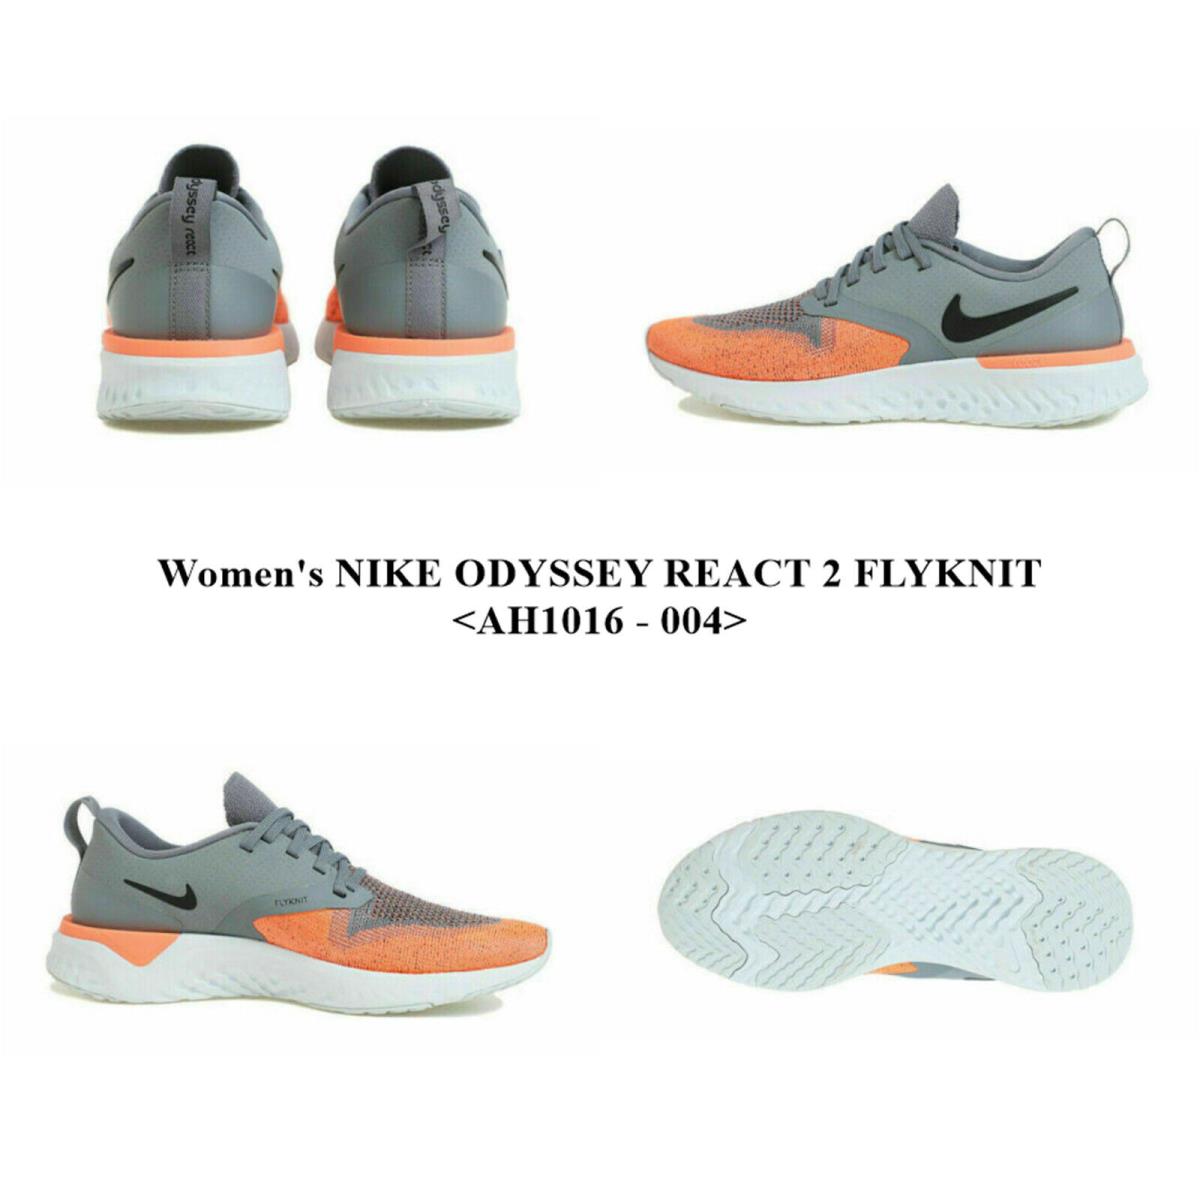 Women`s Nike Odyssey React 2 Flyknit <AH1016 - 004> Running/casual Shoes.nwbox